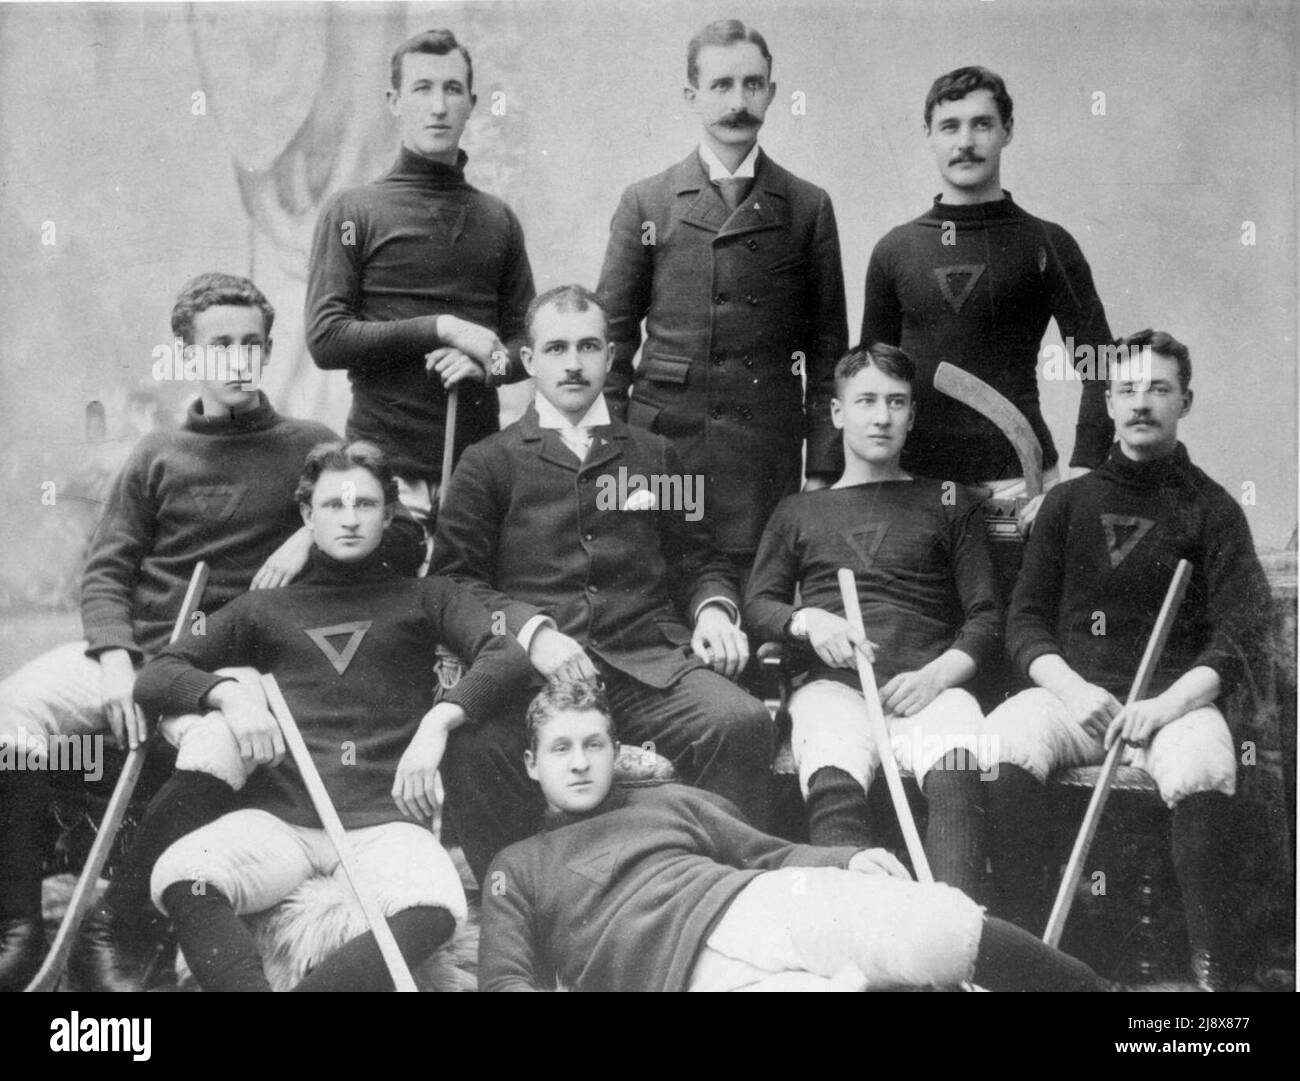 Photographie d'une équipe de hockey masculine de l'Ontario ca. 1895 Banque D'Images